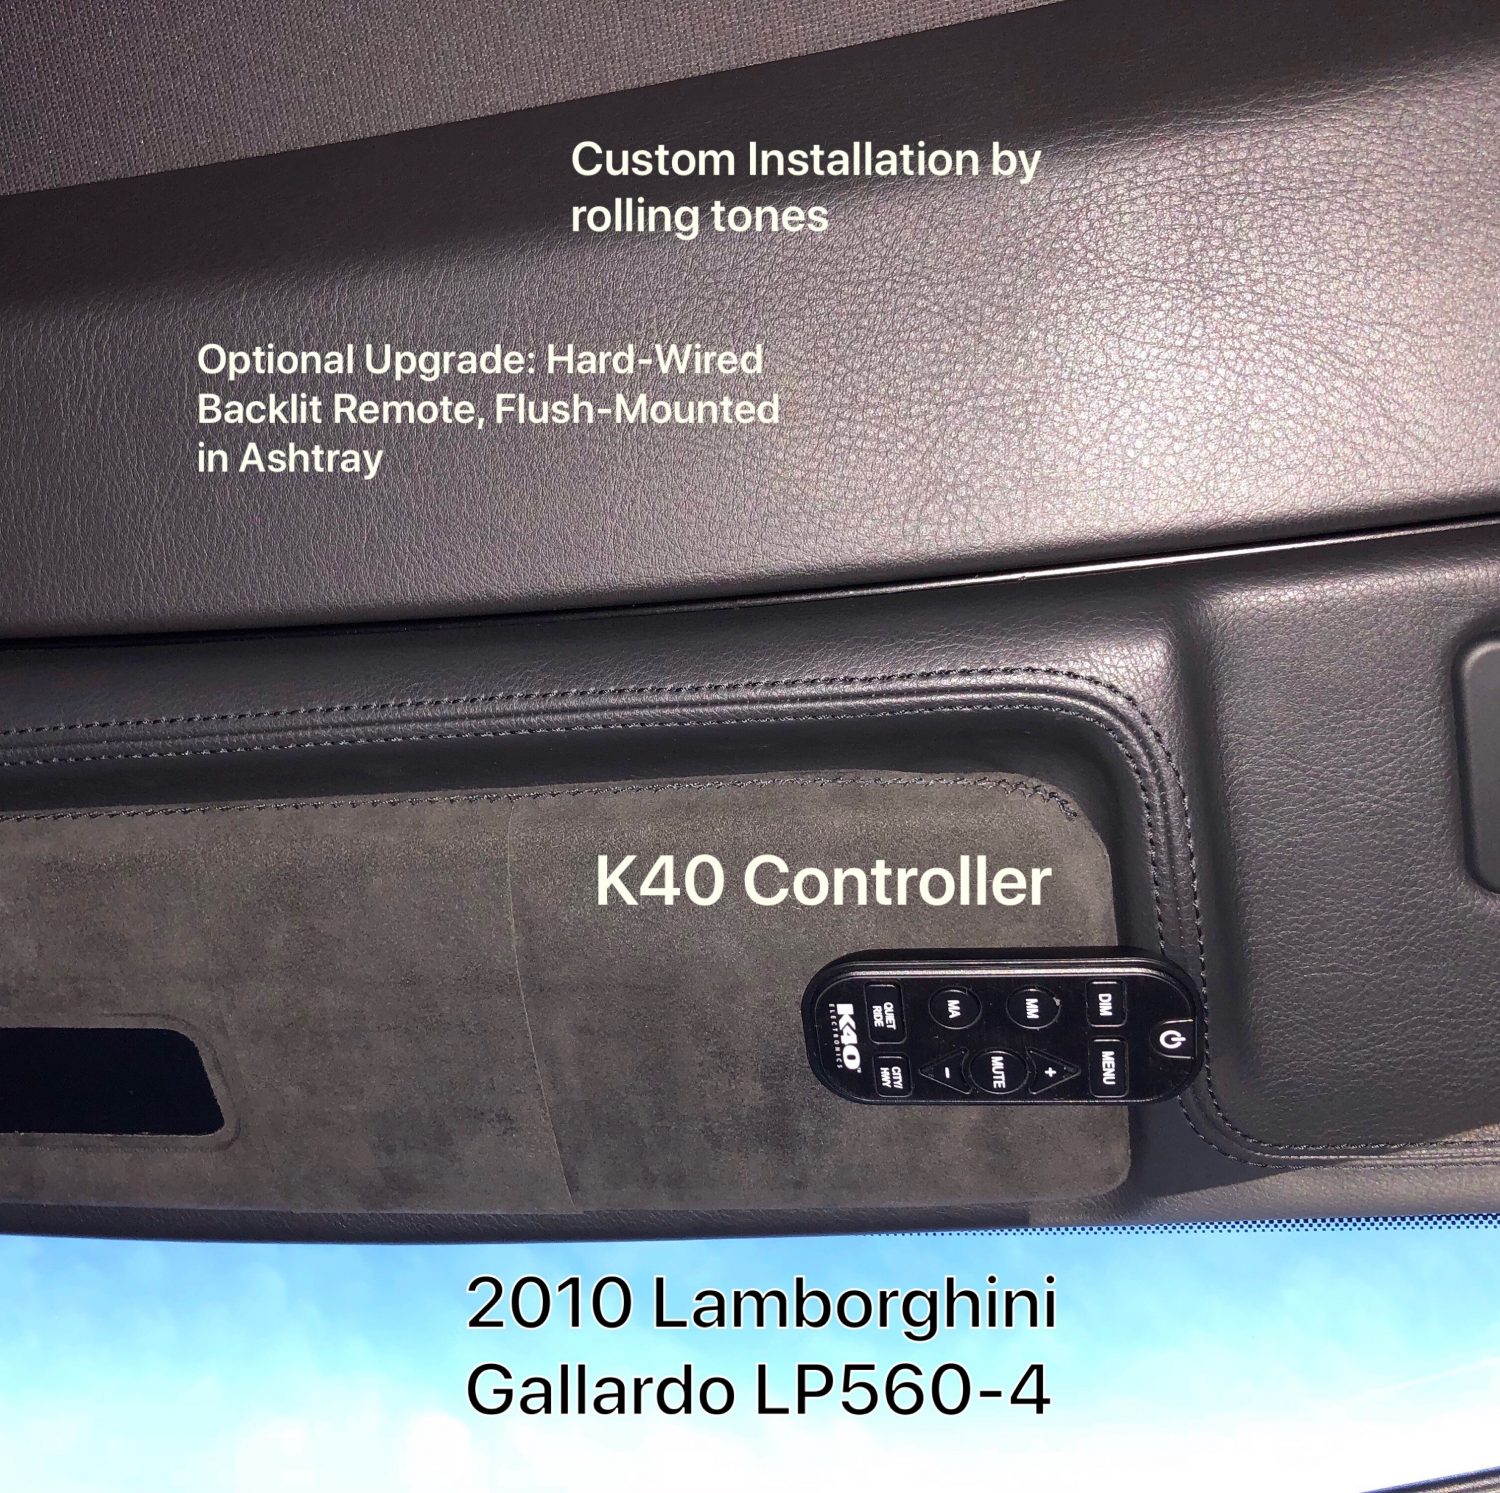 K40 Remote control on a 2010 Lamborghini Gallardo LP560-4 in Concord, NC